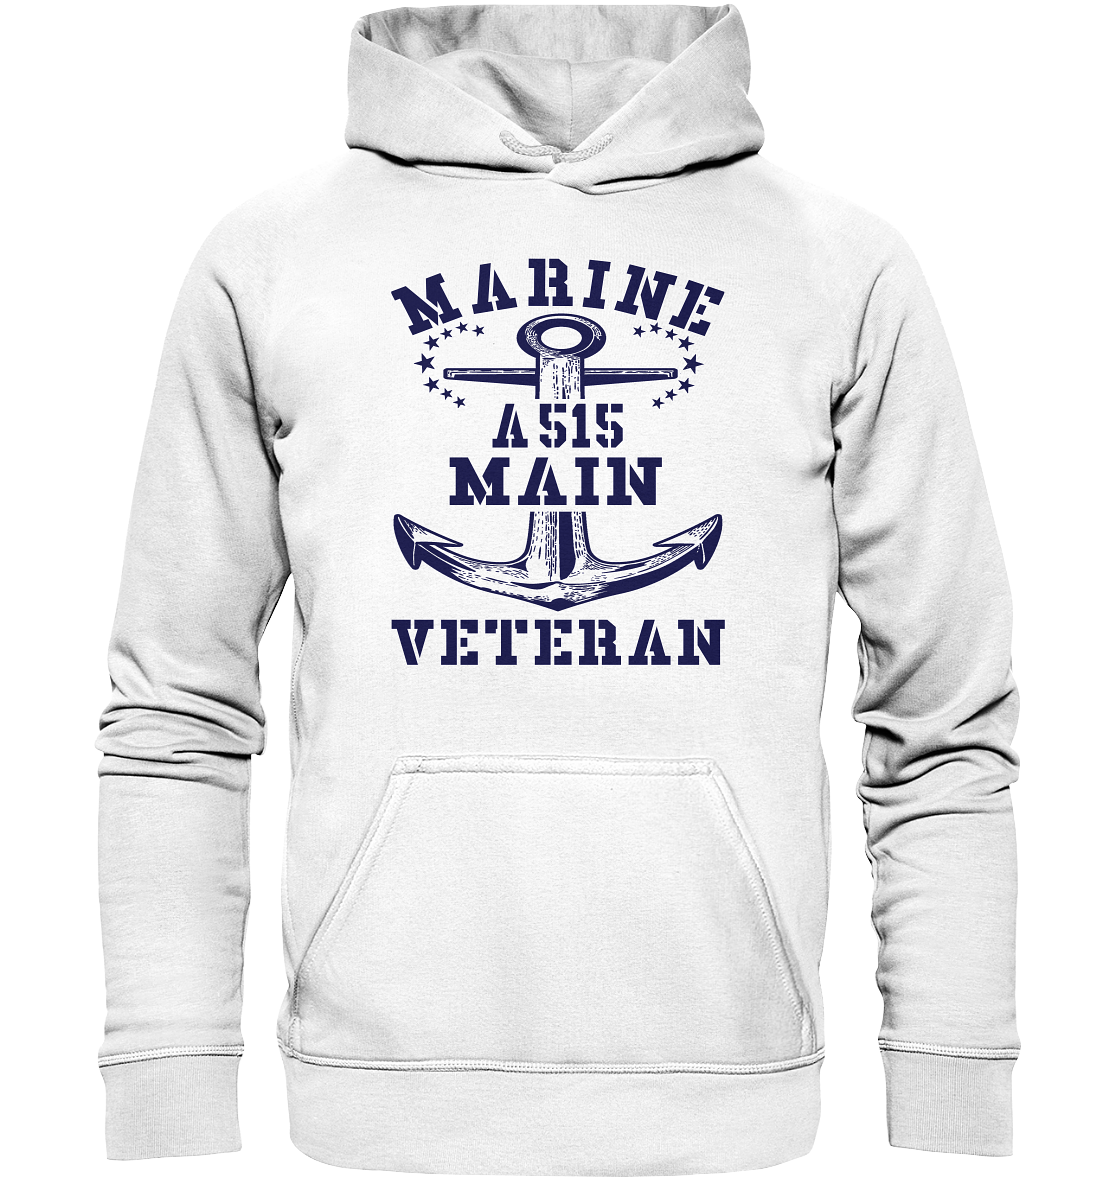 Tender A515 MAIN Marine Veteran  - Basic Unisex Hoodie